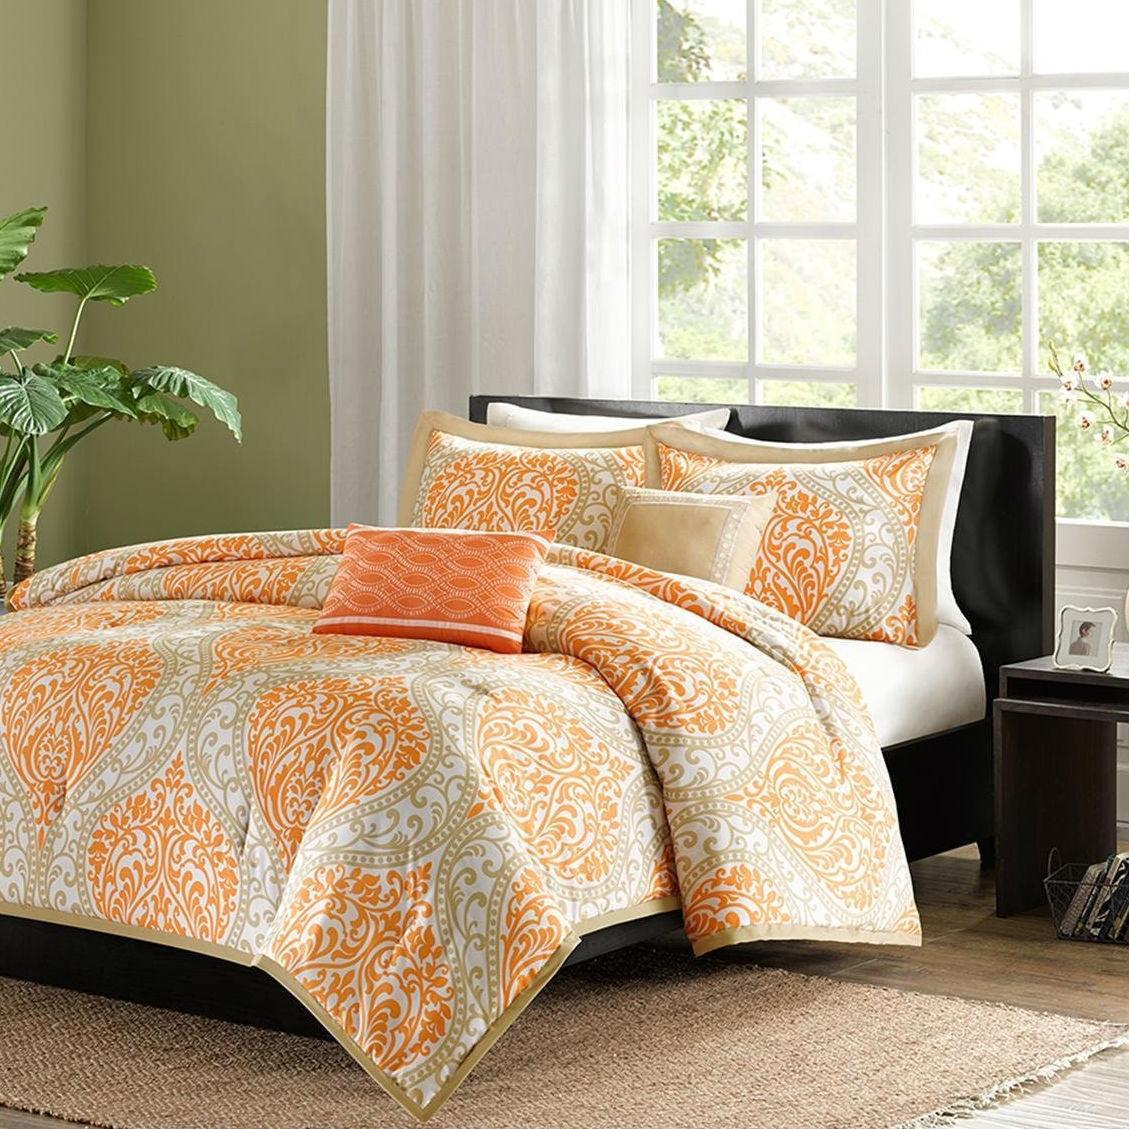 King size 5-Piece Comforter Set in Orange Damask Print - beddingbag.com